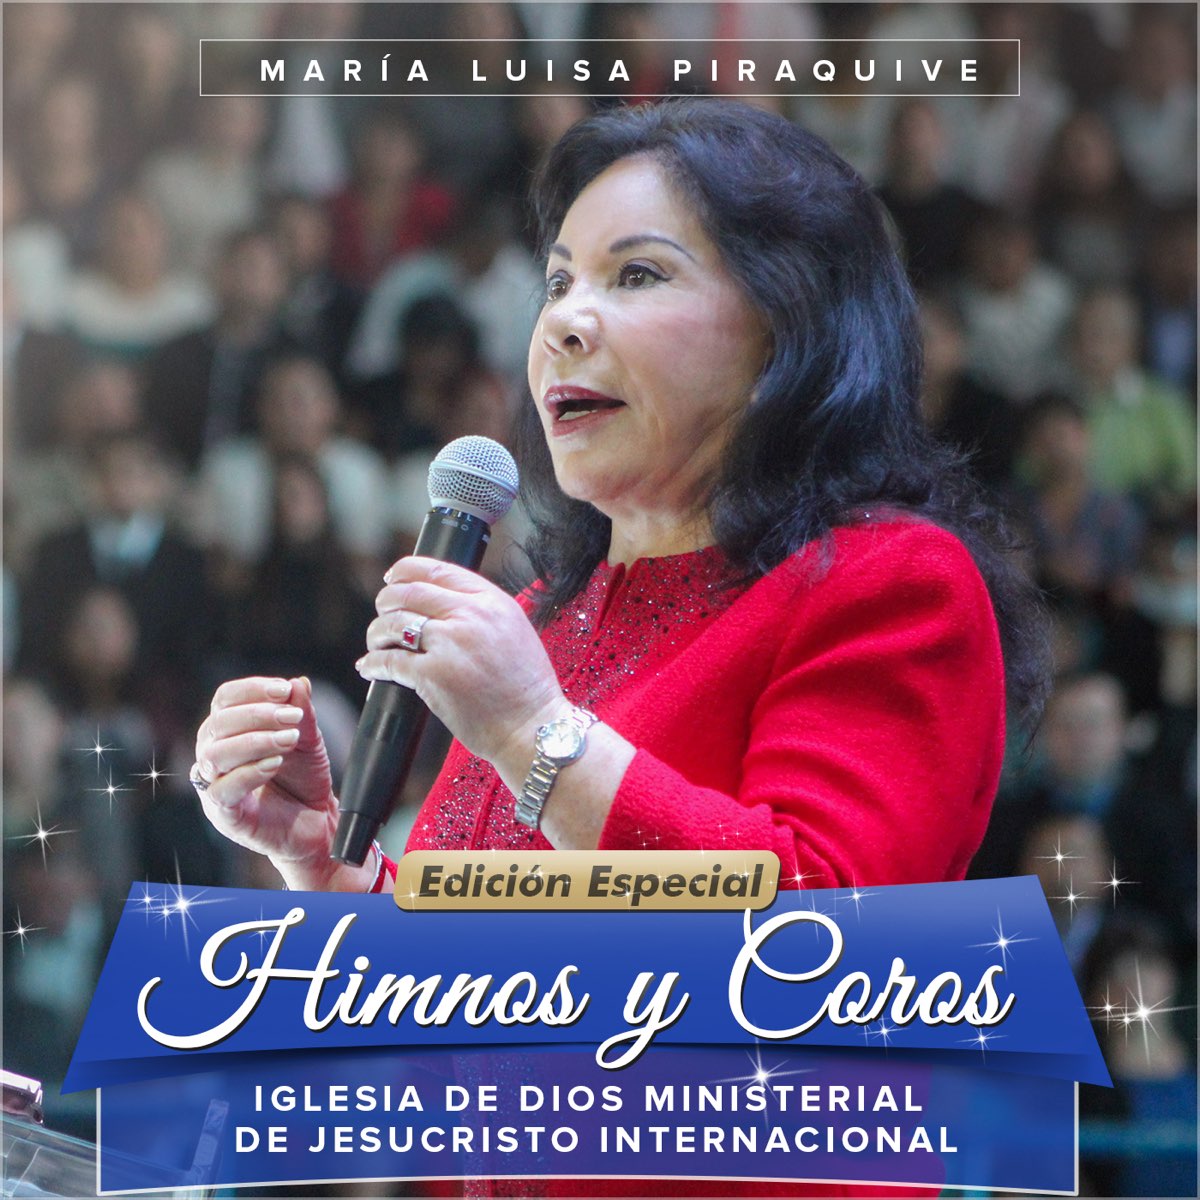 Himnos y Coros: Iglesia de Dios Ministerial de Jesucristo Internacional  (Edición Especial) de María Luisa Piraquive en Apple Music